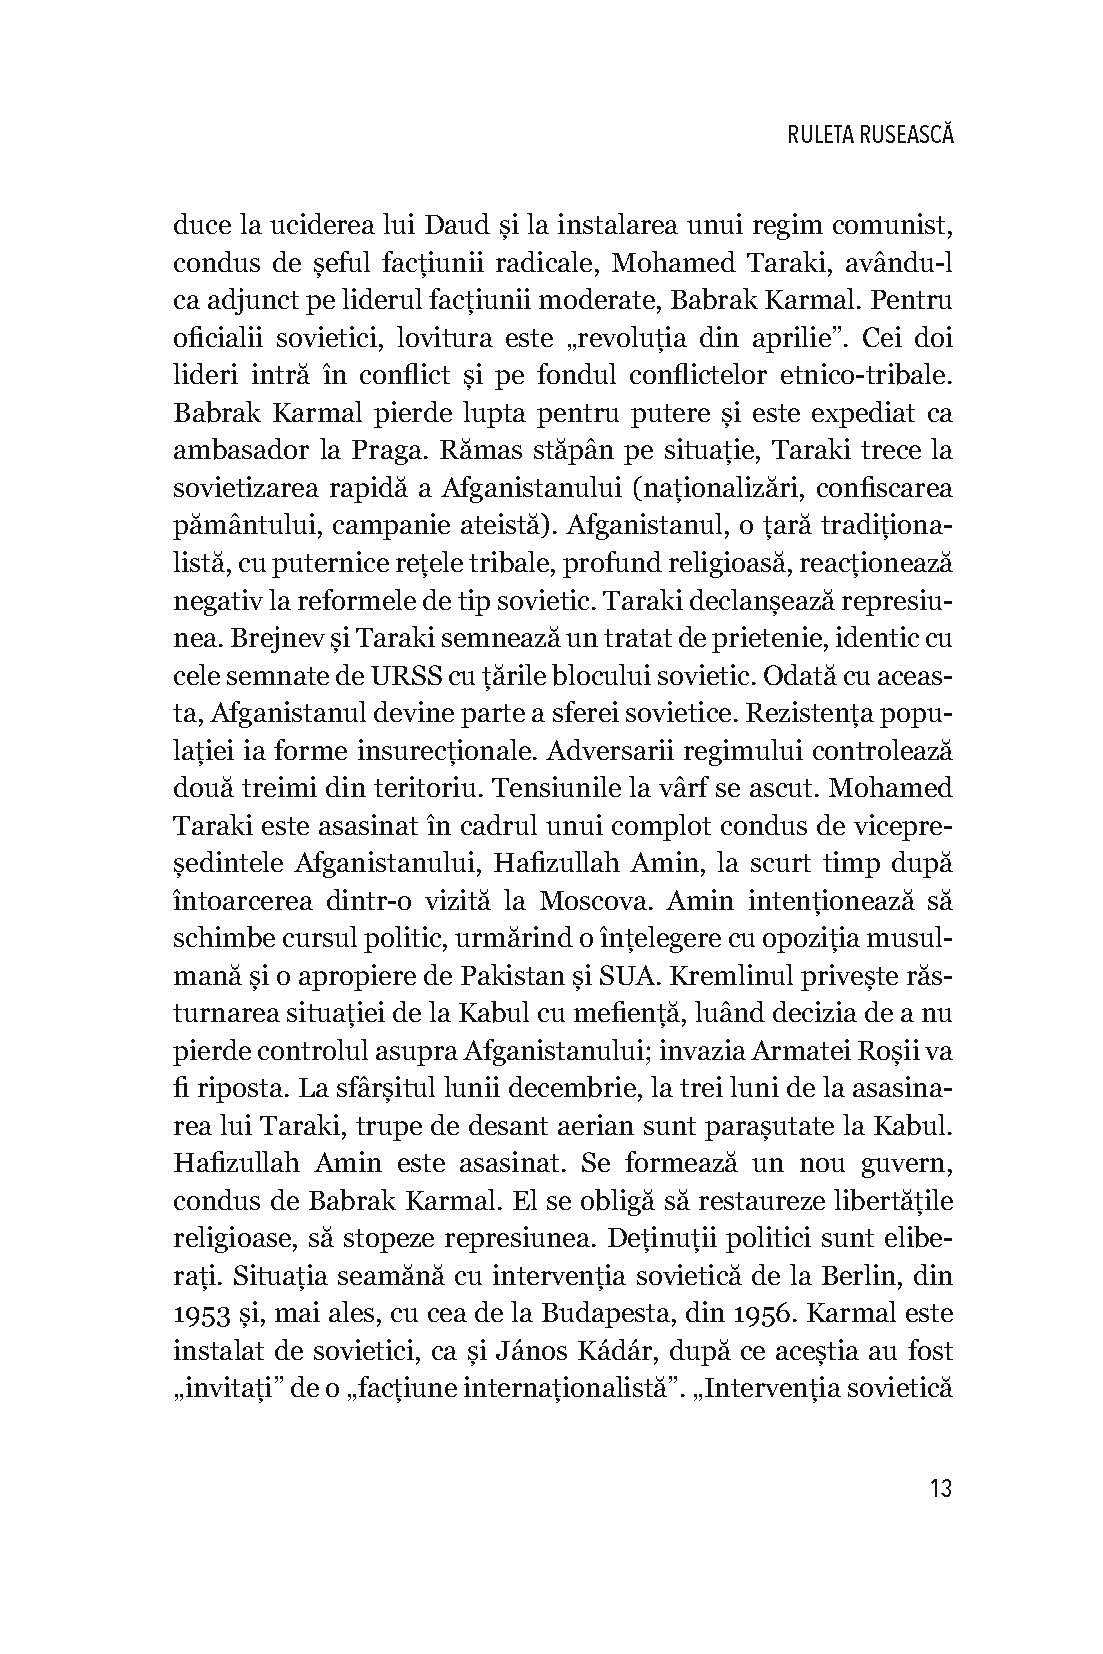 Istoria caderii regimurilor comuniste, de Stelian Tanase. - Publisol.ro